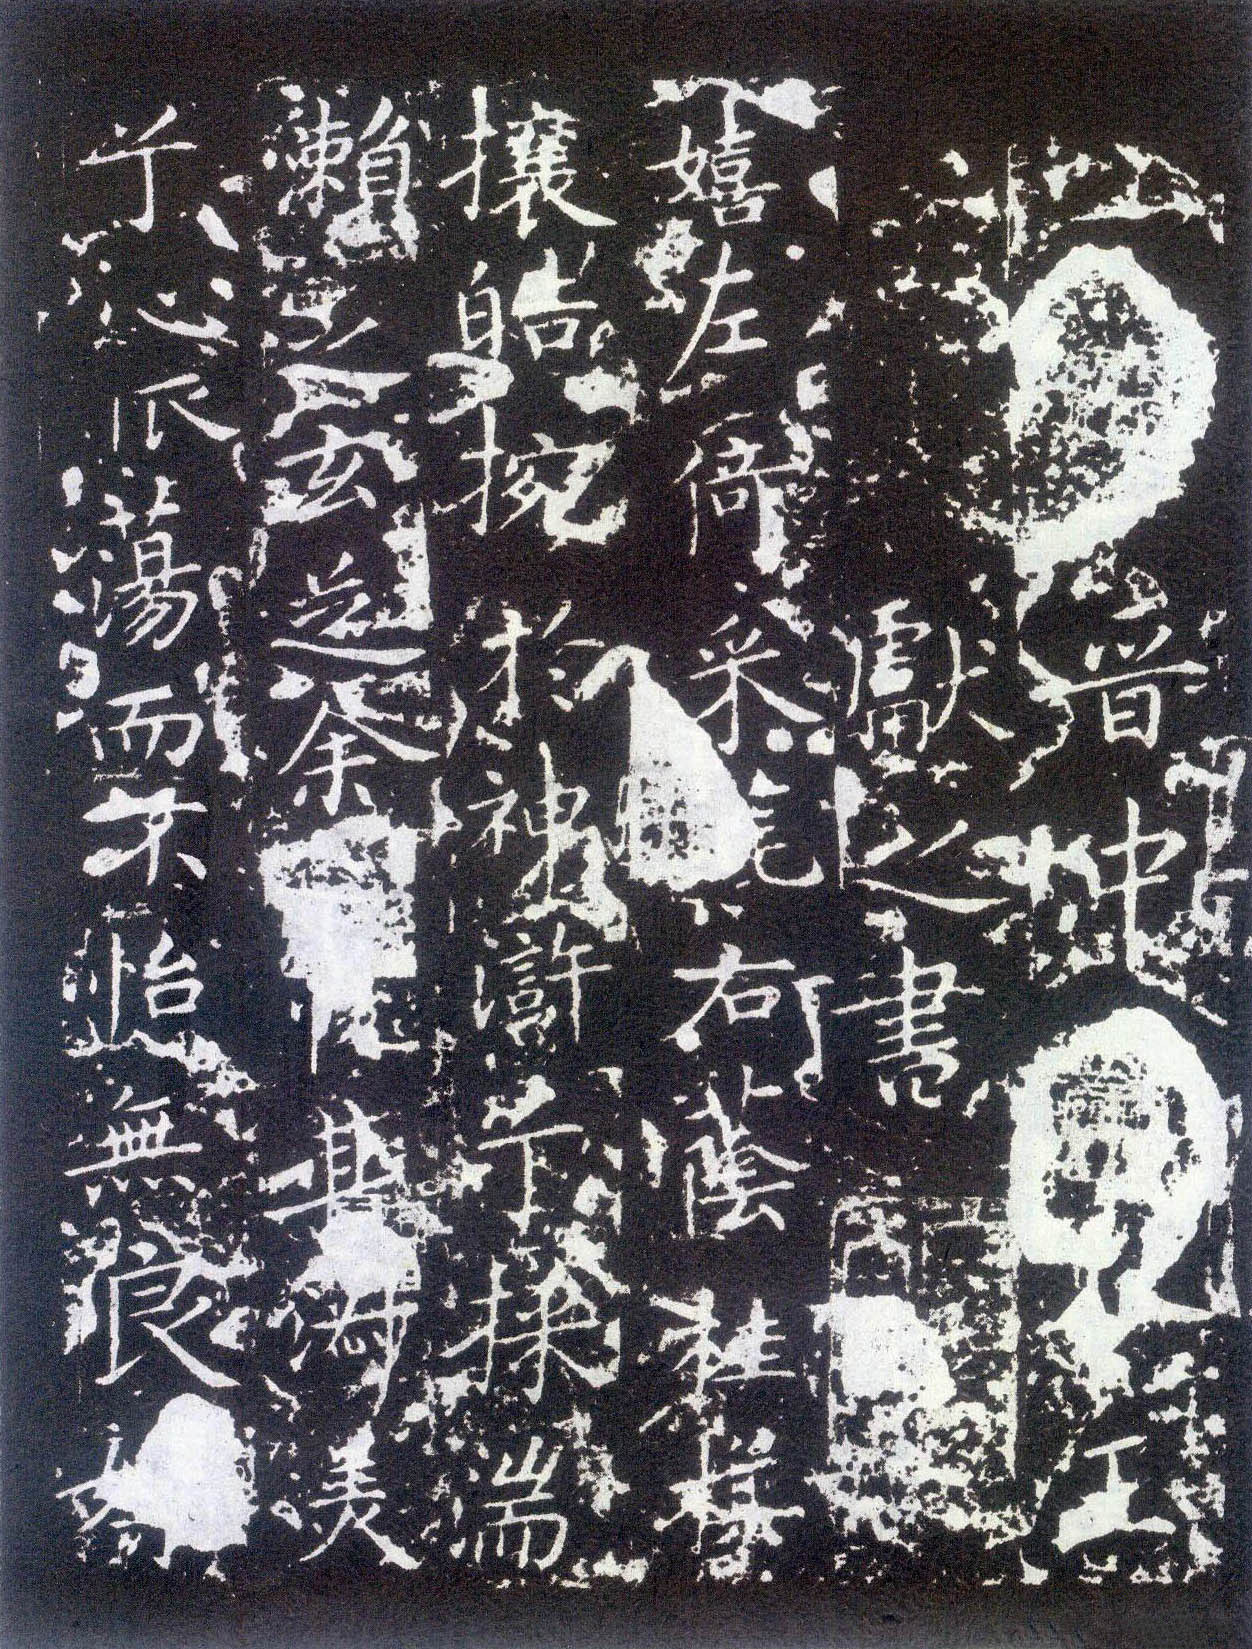 王献之《洛神赋十三行》碧玉版拓本-首都博物馆藏(图3)